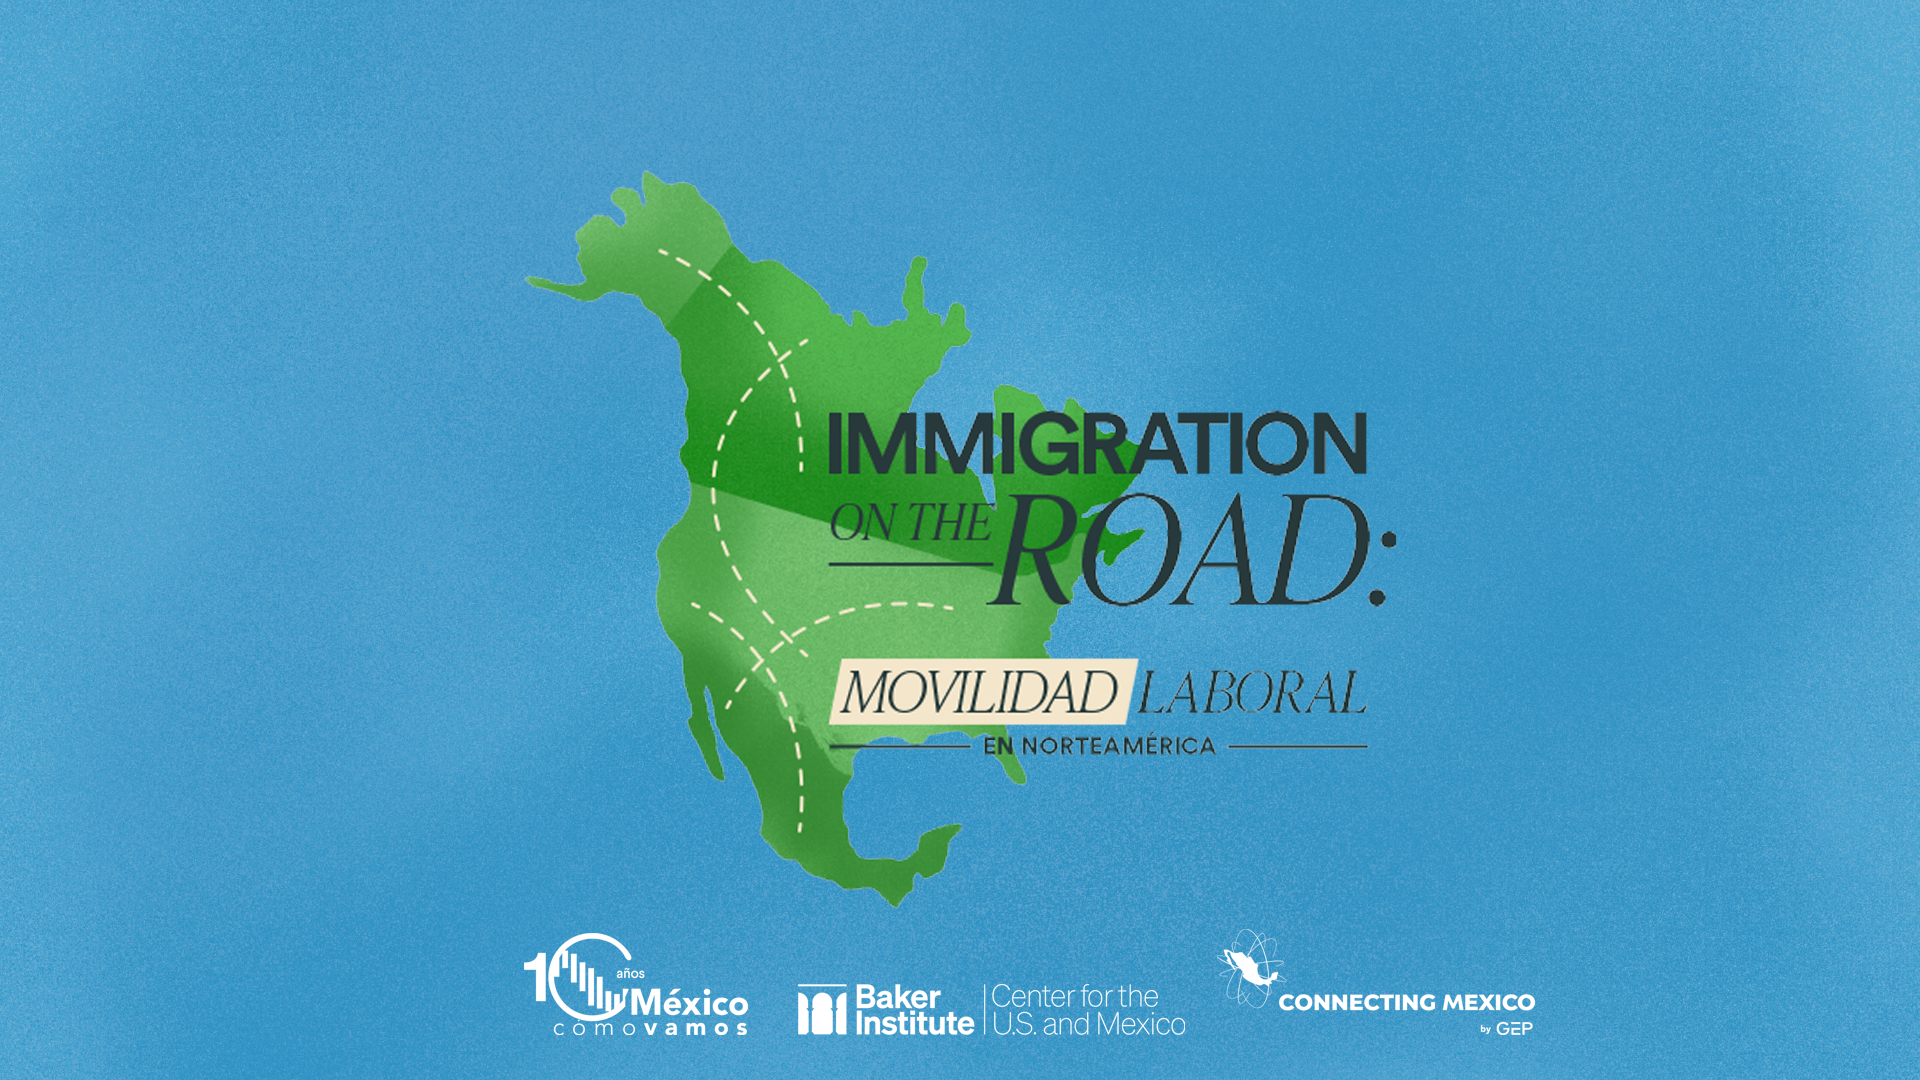 Inmigration on the road: Movilidad Laboral en Norteamérica